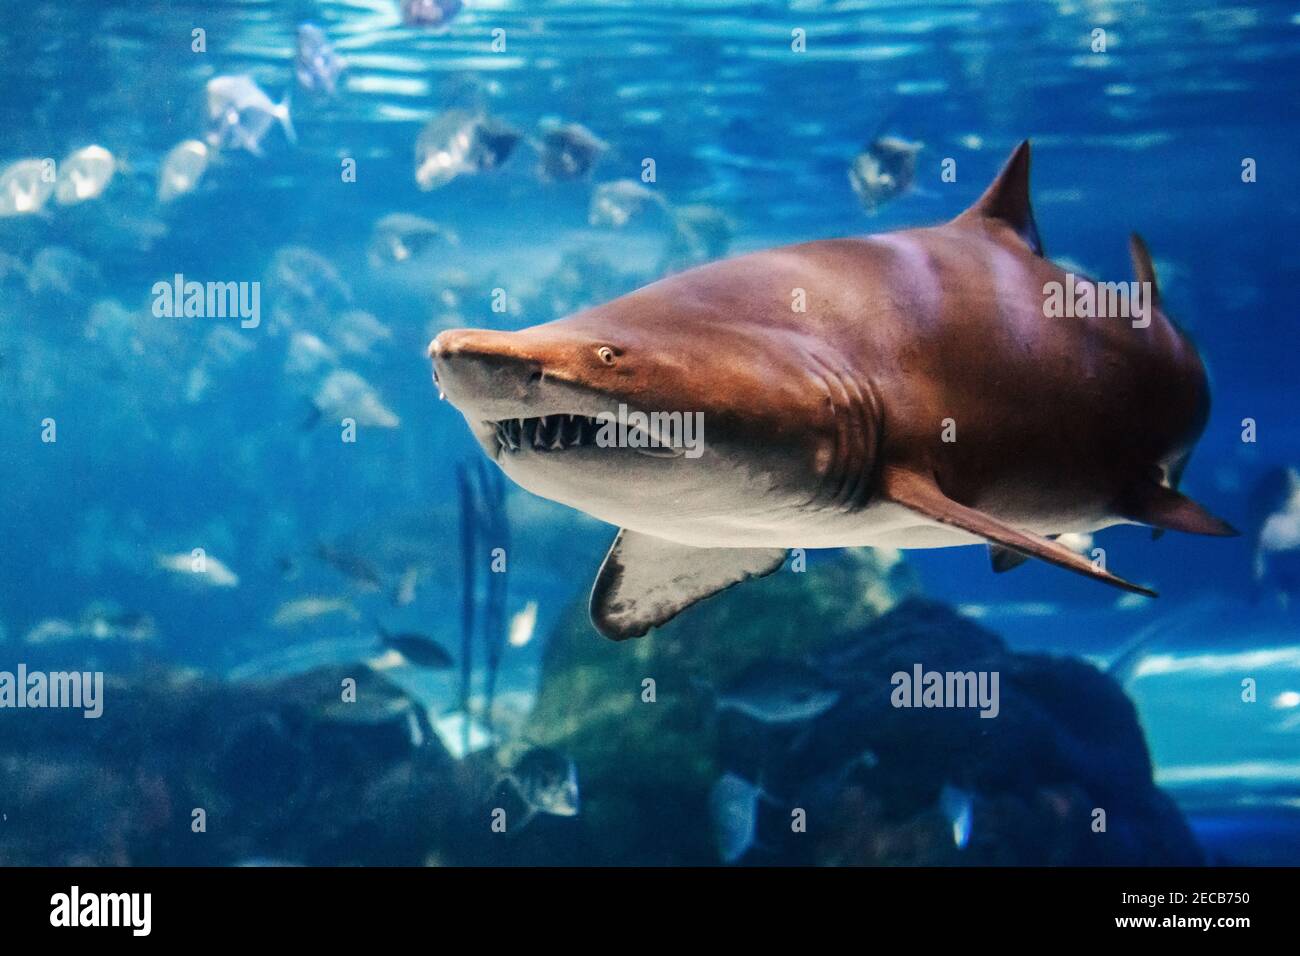 Riesiger Gruselhai unter Wasser im Aquarium. Meer Meer marine Tierwelt Raubtier gefährliche Tiere schwimmen in blauem Wasser. Unterwasserwelt. Wasser Natur f Stockfoto